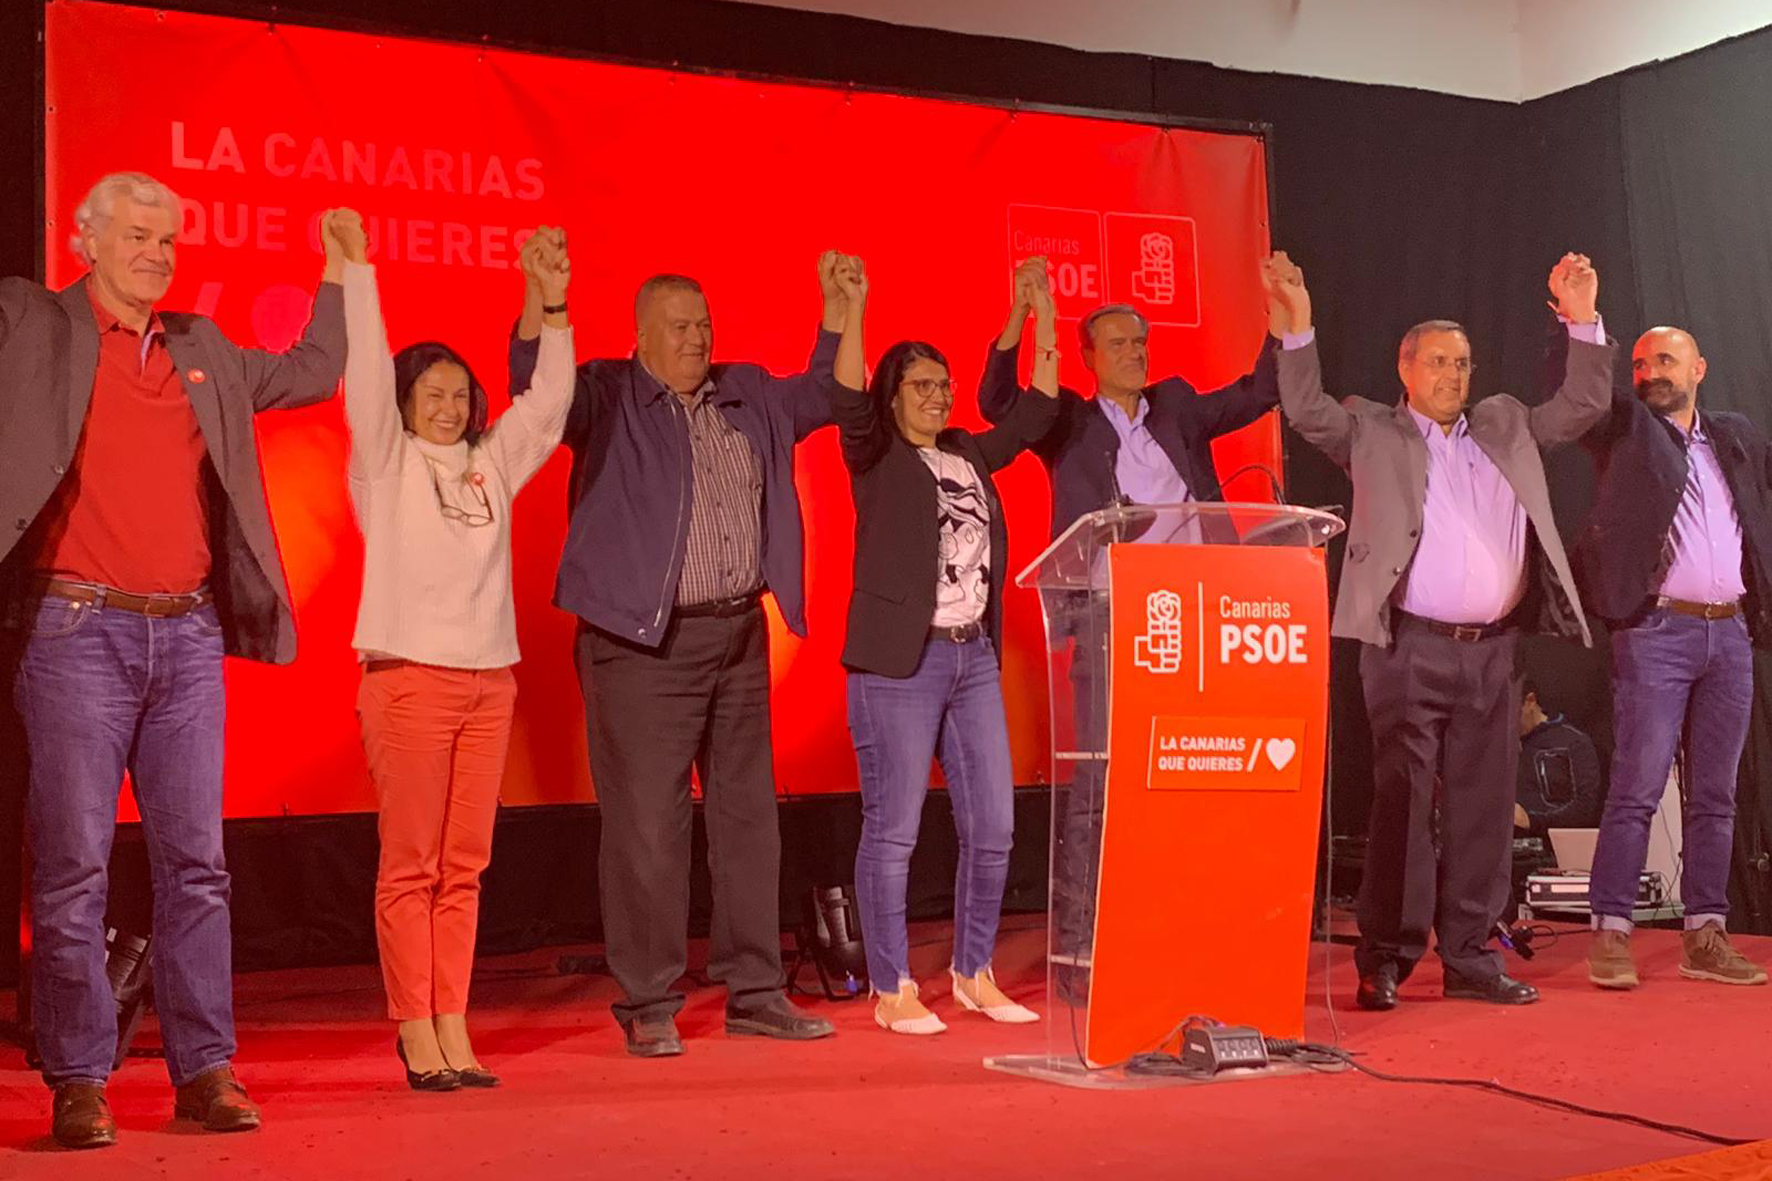 El PSOE herreño agradece el apoyo ciudadano y la voluntad de consenso de NC y PP para formar gobiernos estables